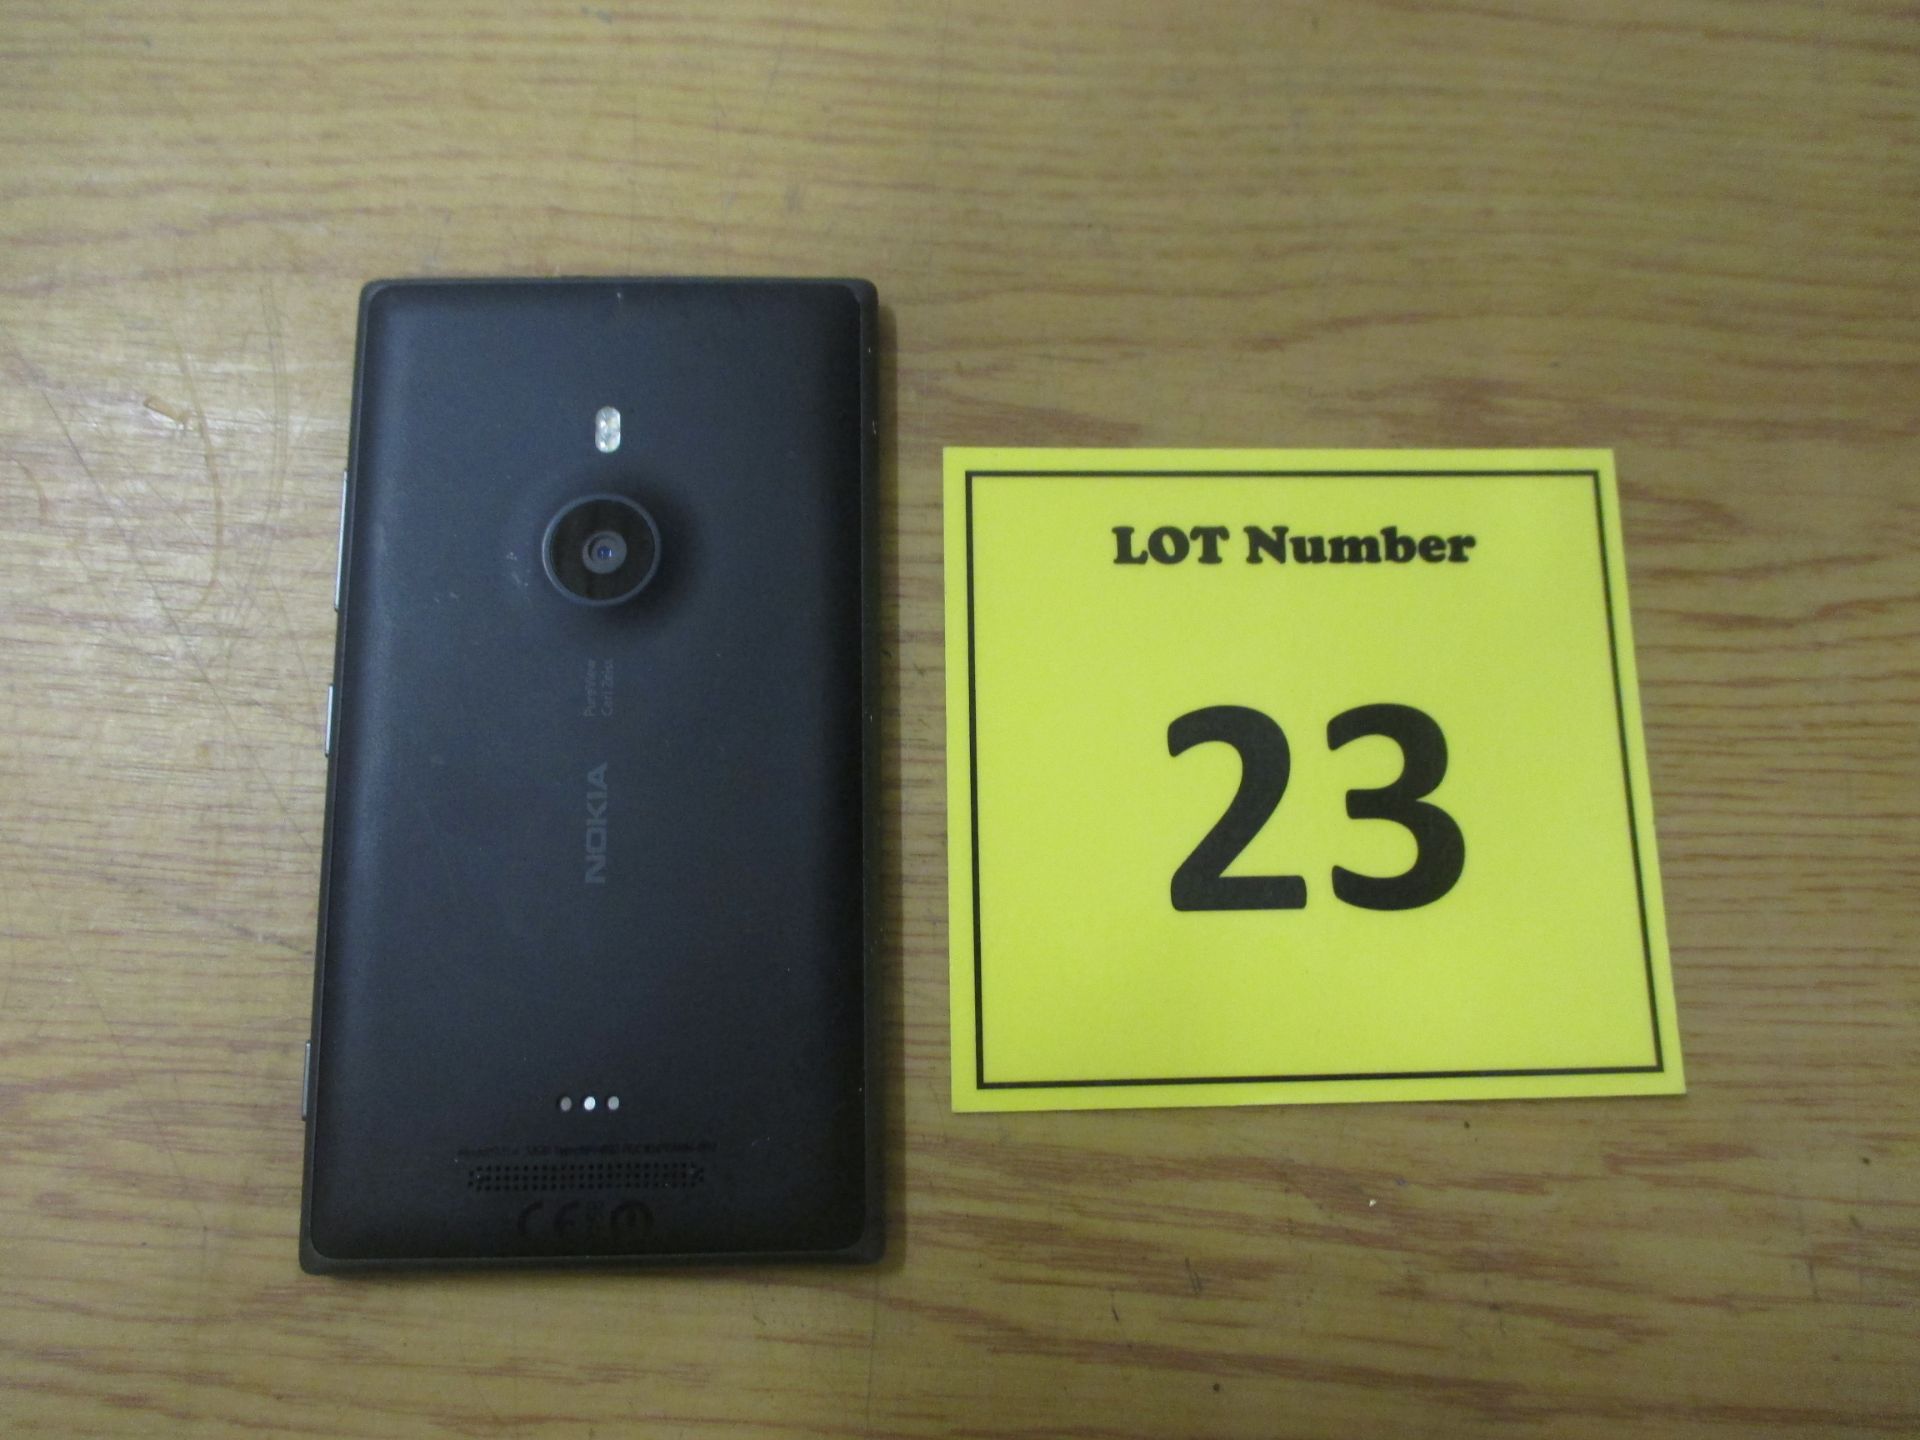 NOKIA LUMIA 925.4 32GB MOBILE SMARTPHONE - Image 2 of 2